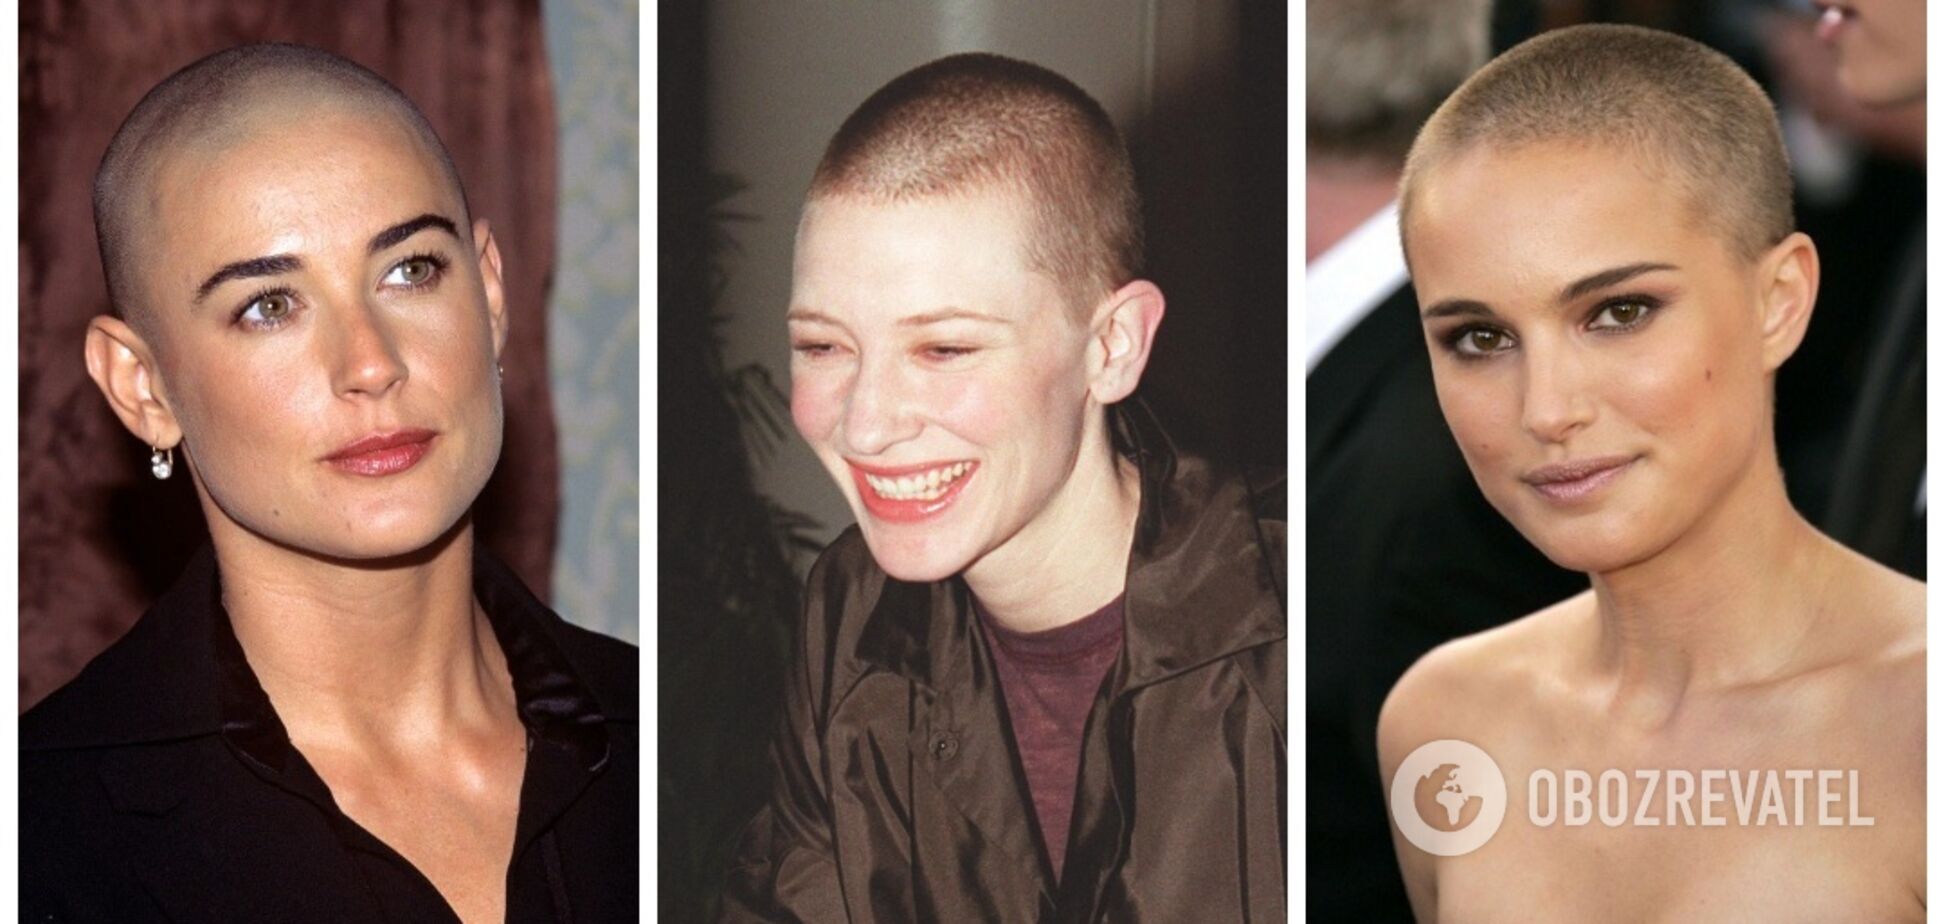 Деми Мур, Натали Портман и другие знаменитости, которые не побоялись обрить голову. Фото